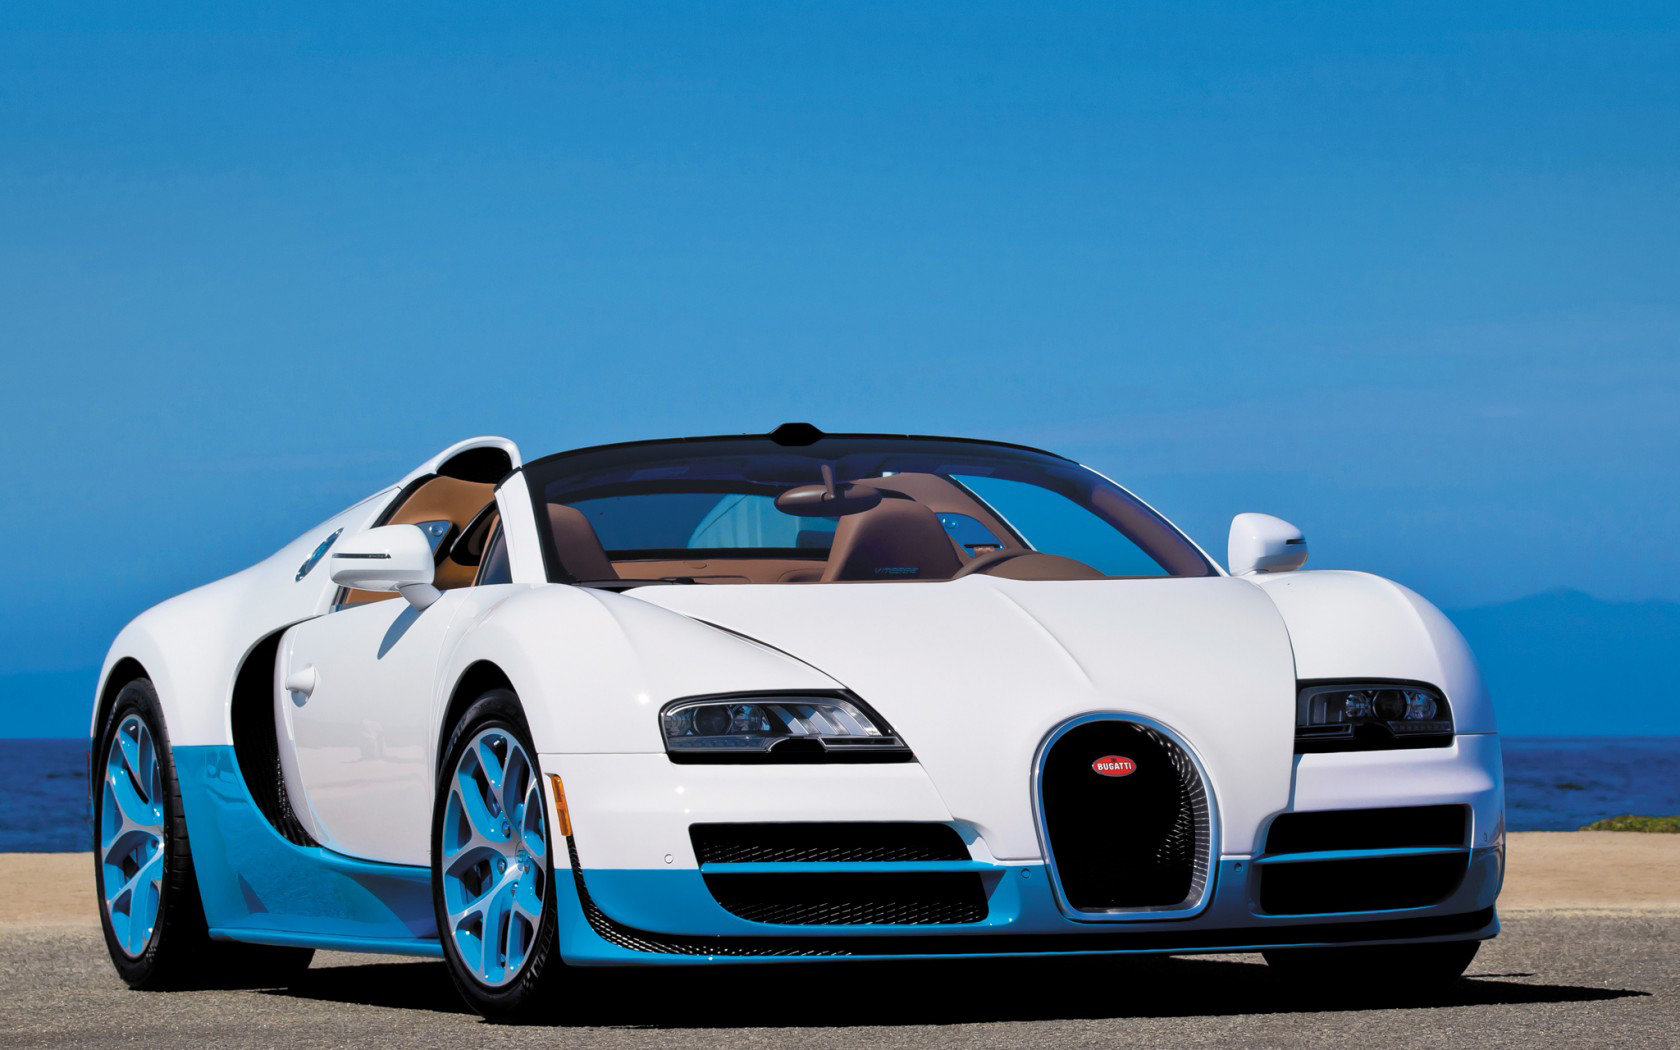 Awesome Bugatti Veyron free wallpaper ID:298036 for hd 1680x1050 desktop